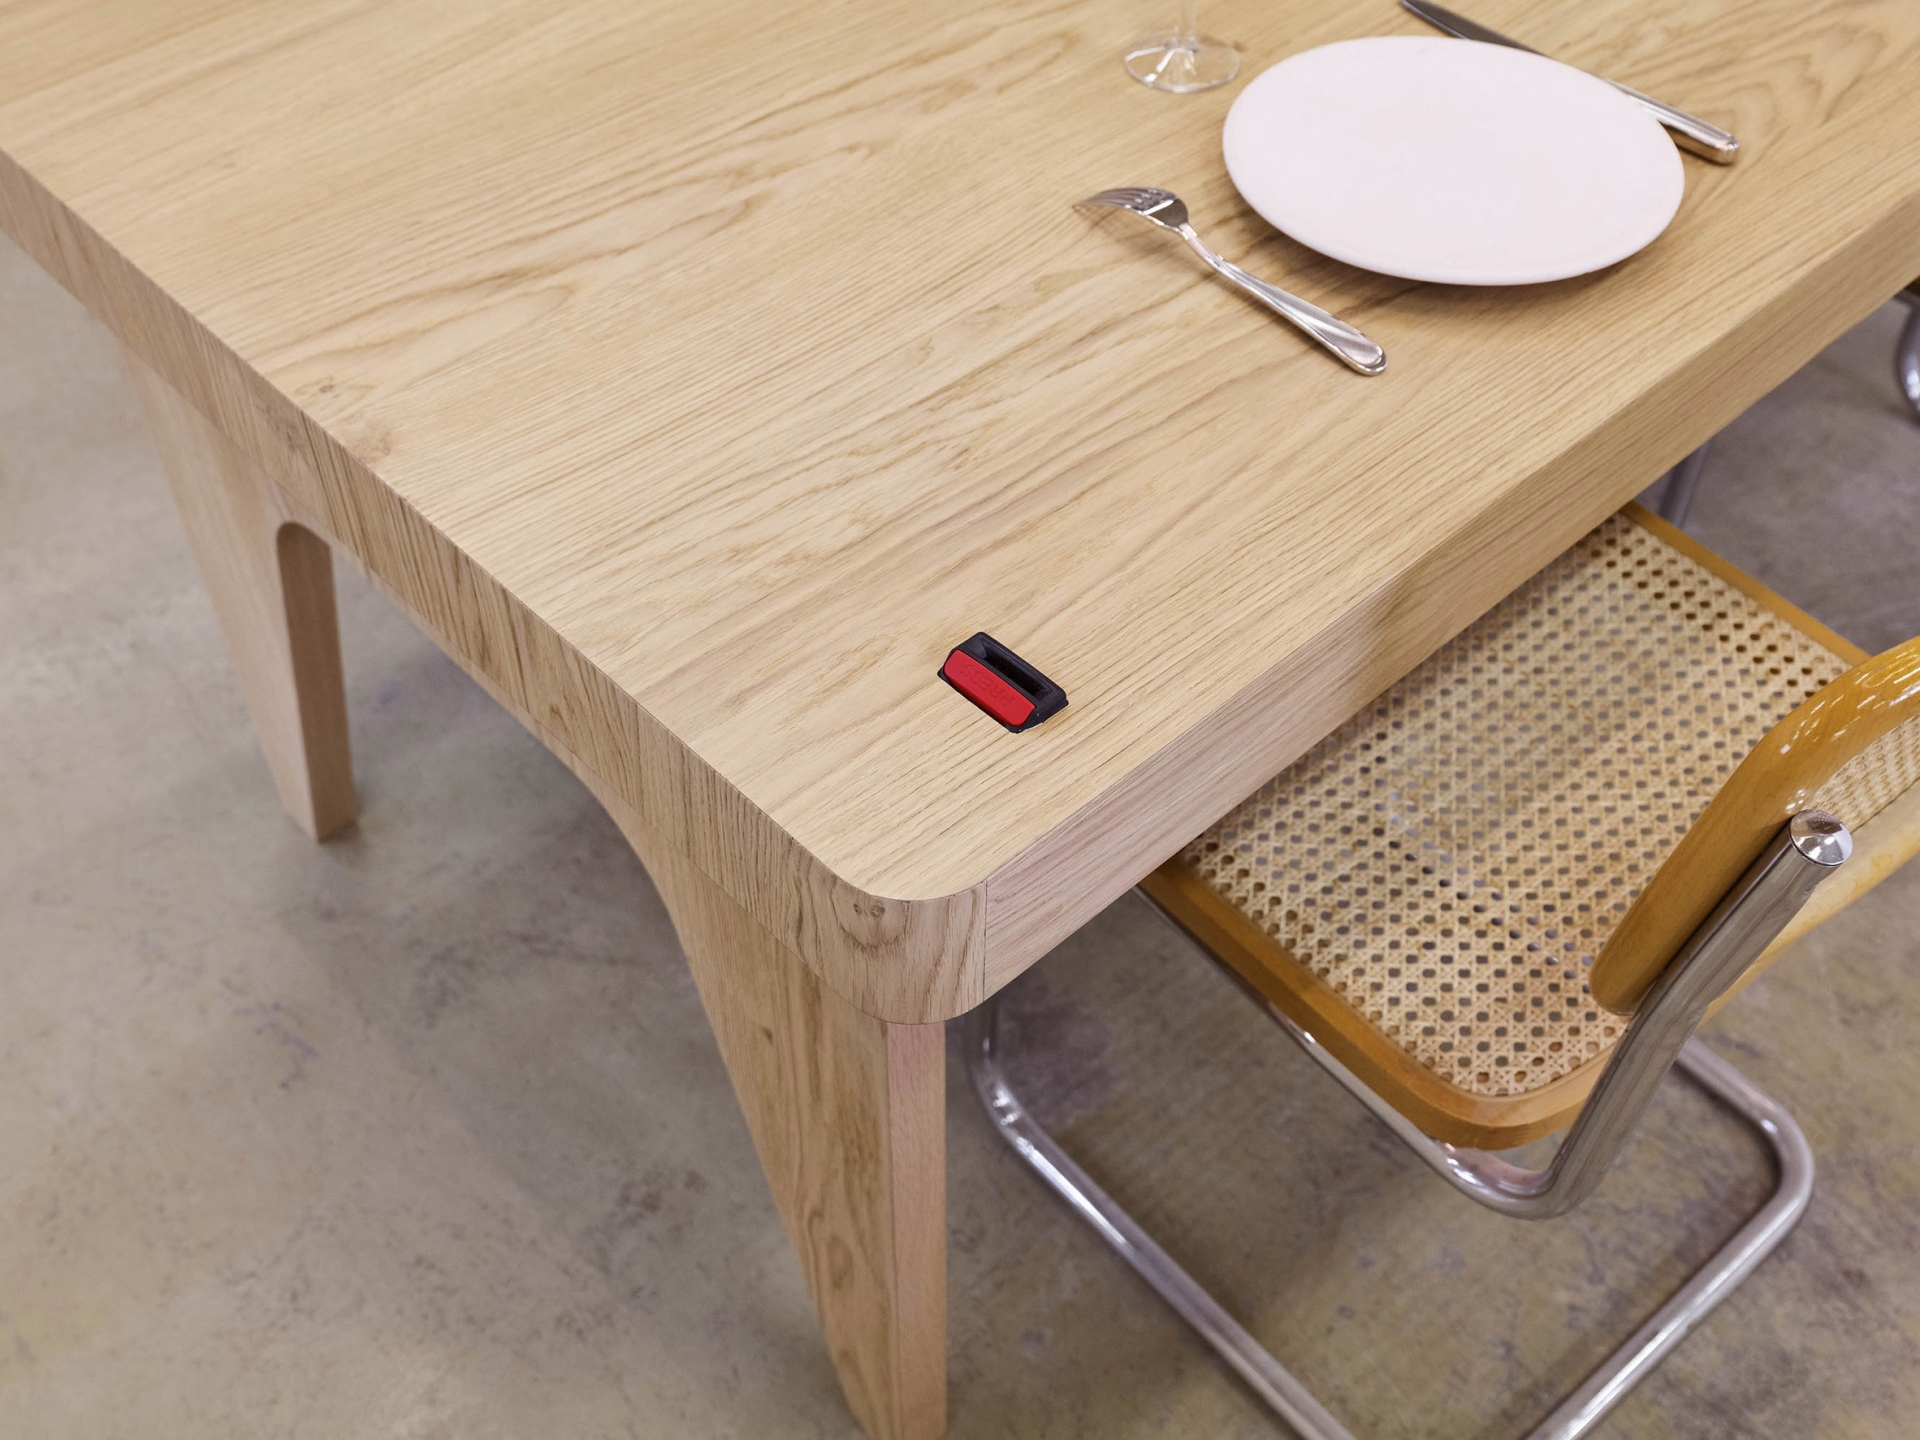 Phần chân bàn bằng gỗ sồi được thiết kế gấp gọn, khi cần sử dụng có thể gỡ ra để chiếc bàn đứng vững trên mặt sàn.